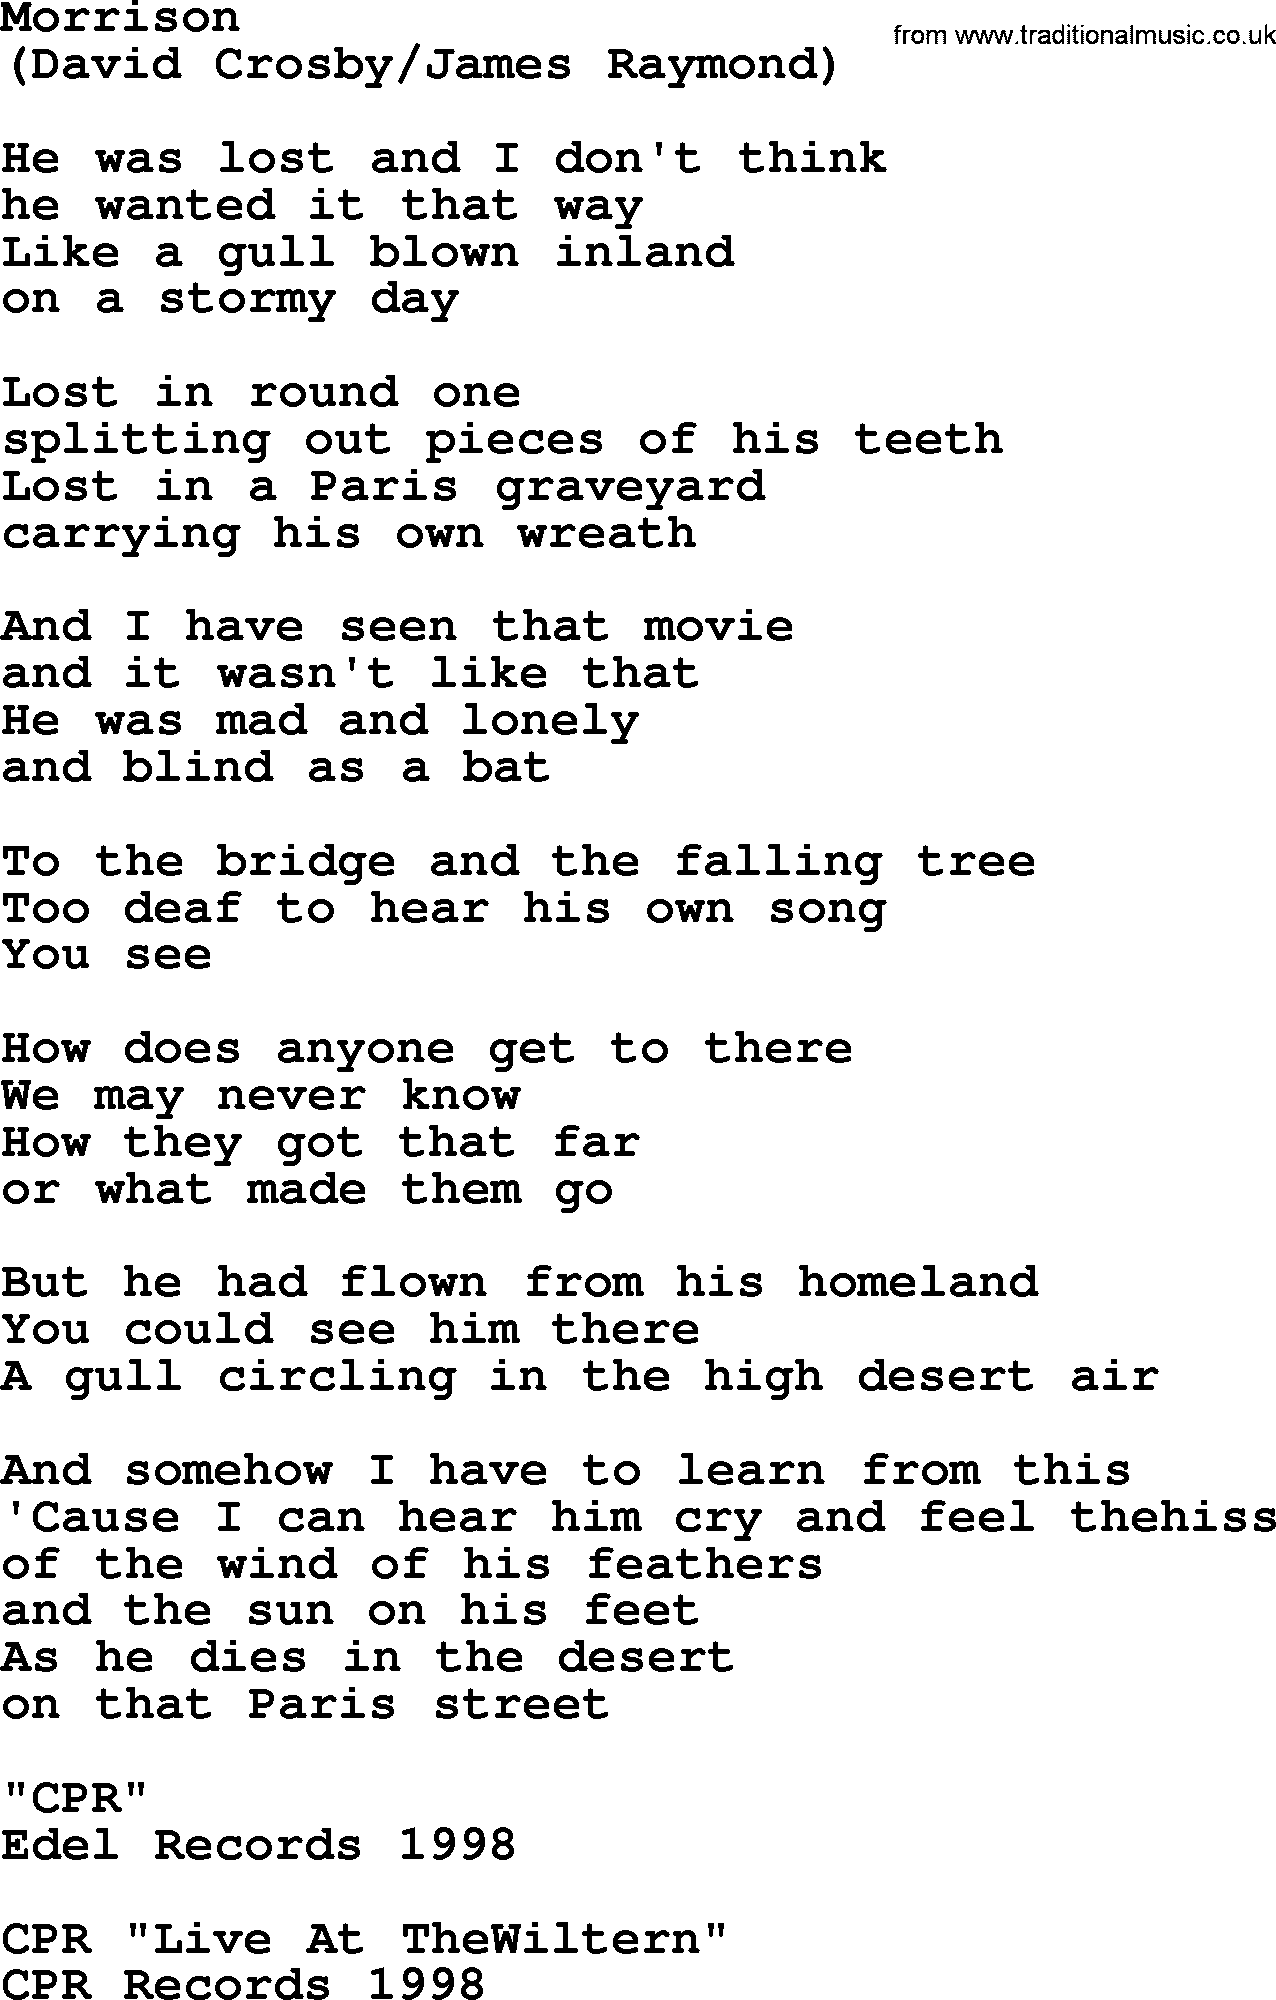 The Byrds song Morrison, lyrics